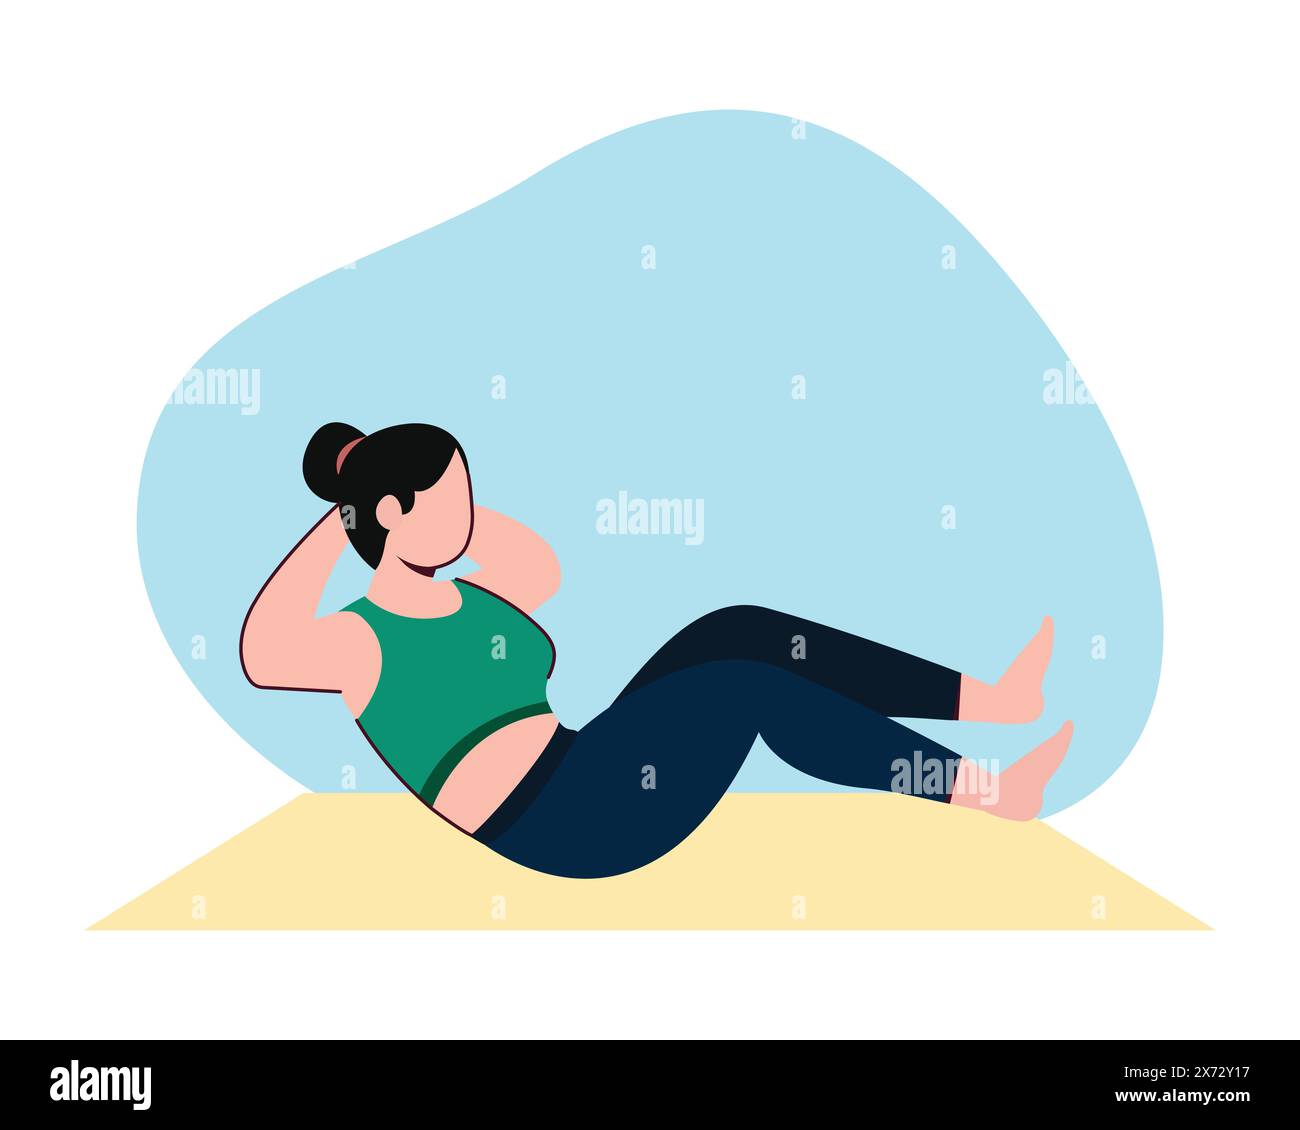 Die junge Frau macht Sit-ups, um ihren Körper idealer zu machen. Sport- und Freizeitdesign. Gesunder Lebensstil im flachen Design. Stock Vektor